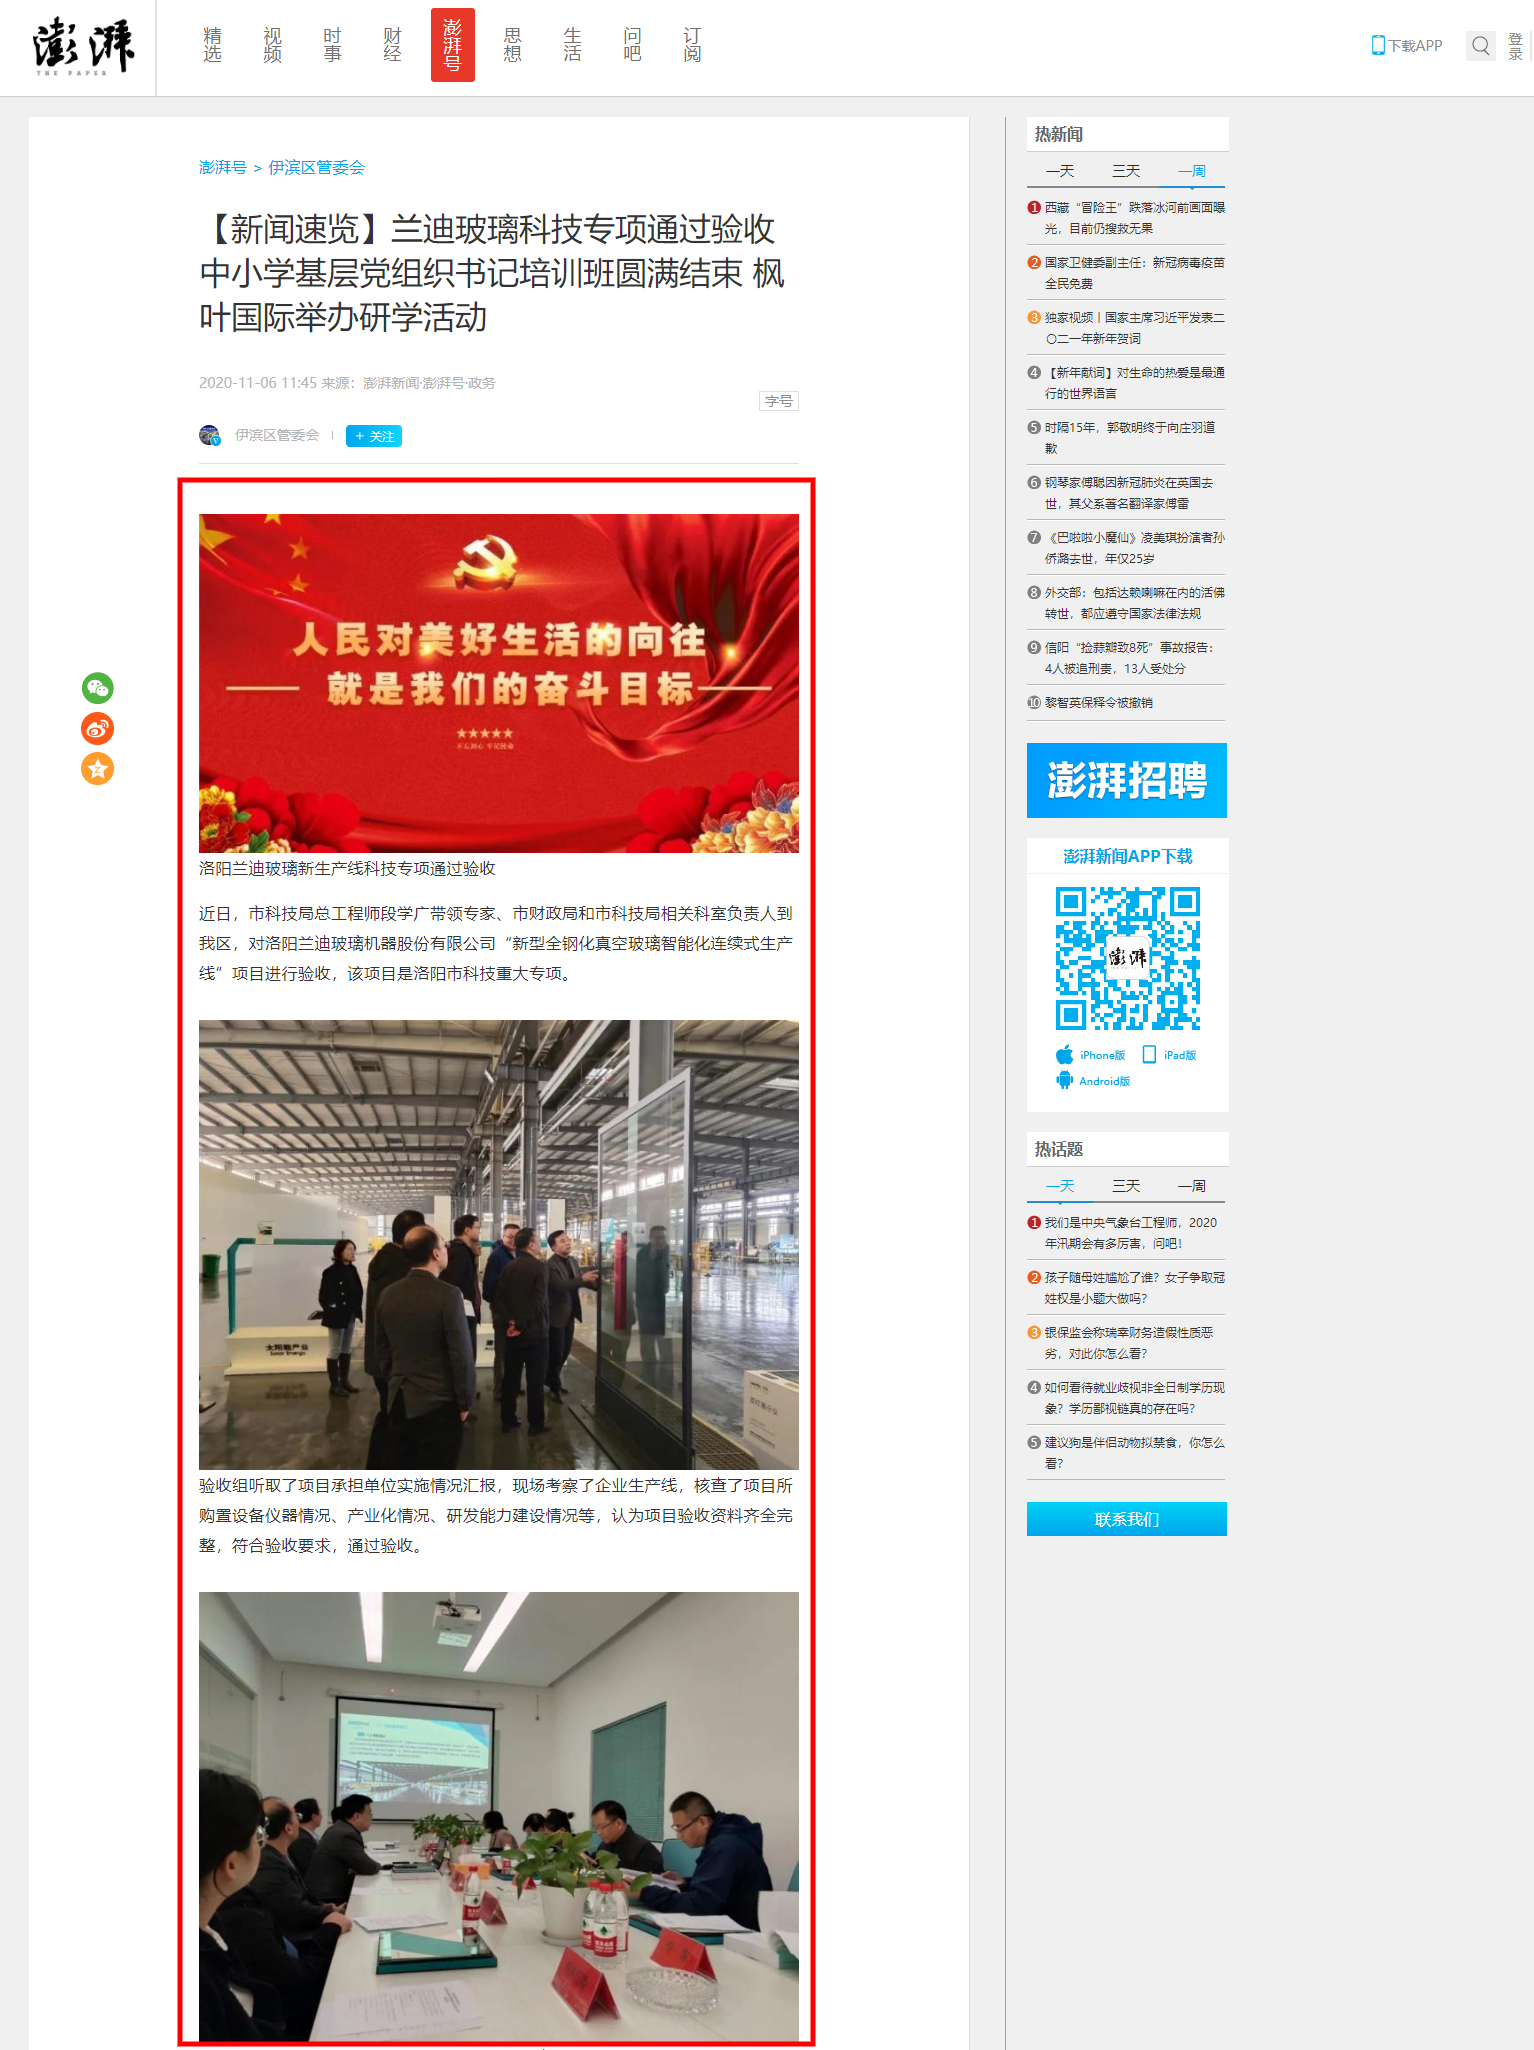 screenshot-www.thepaper.cn-2021.01.04-14_15_50.png